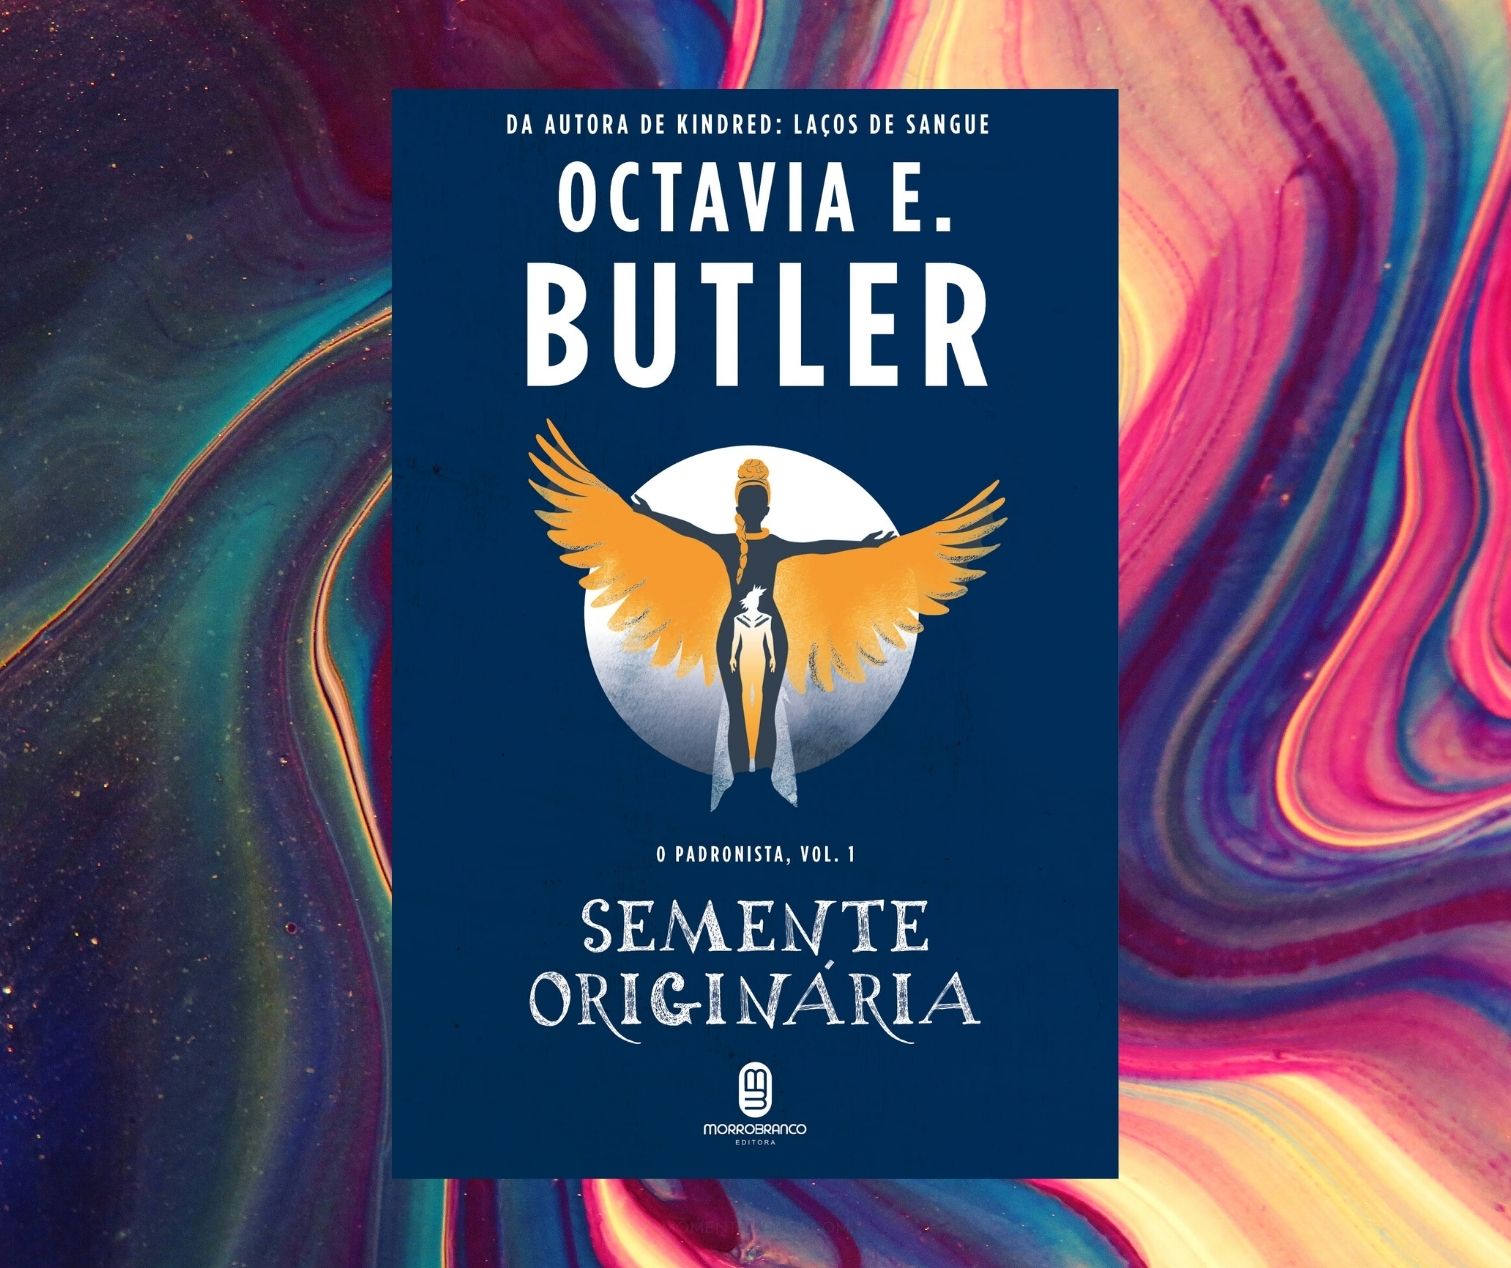 Resenha: Semente originária, de Octavia Butler